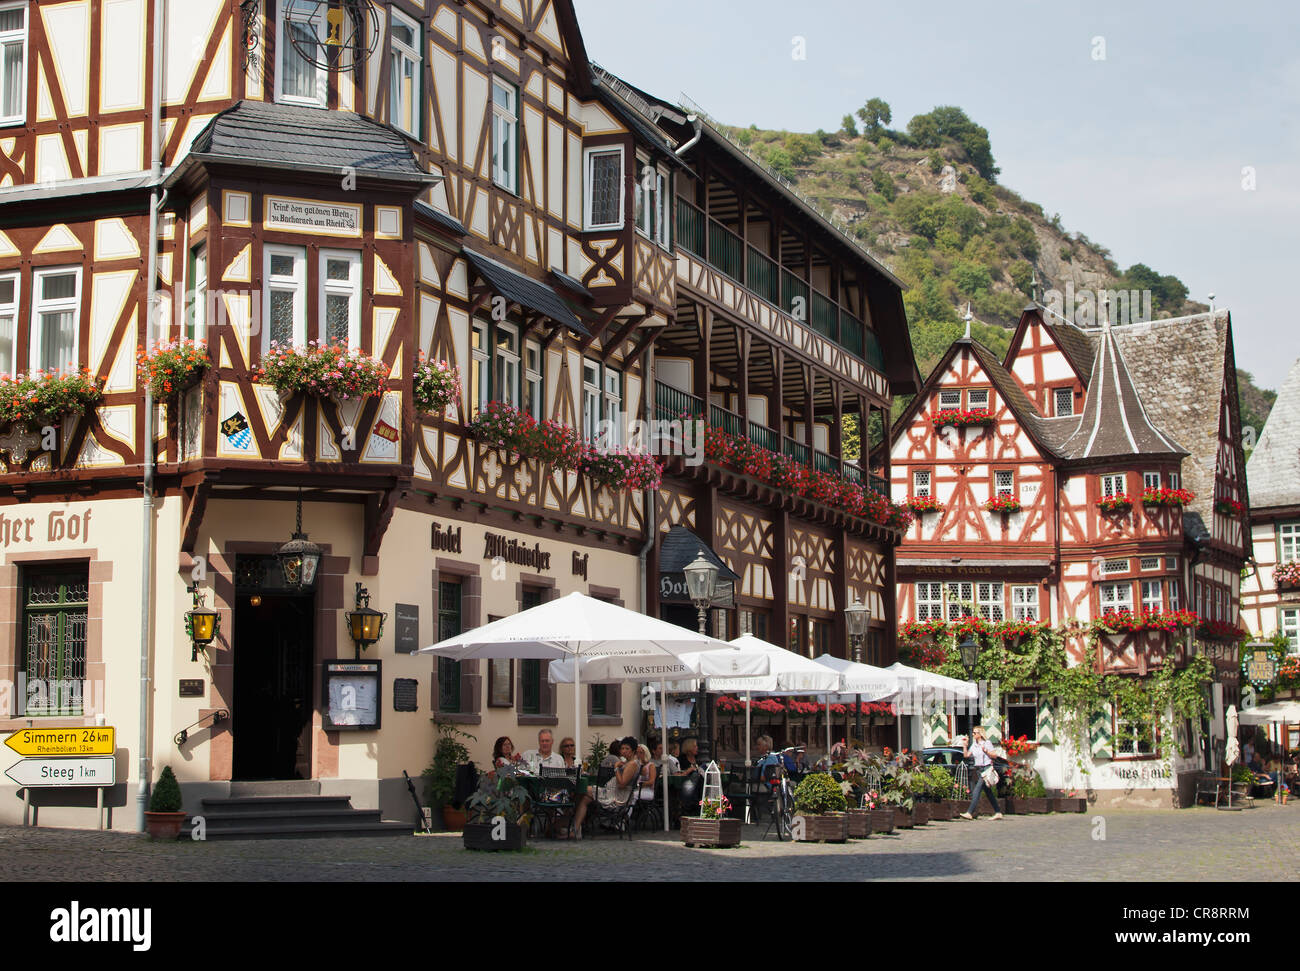 Place de la ville de Bacharach sur le Rhin, Rhénanie-Palatinat, Allemagne, Europe Banque D'Images